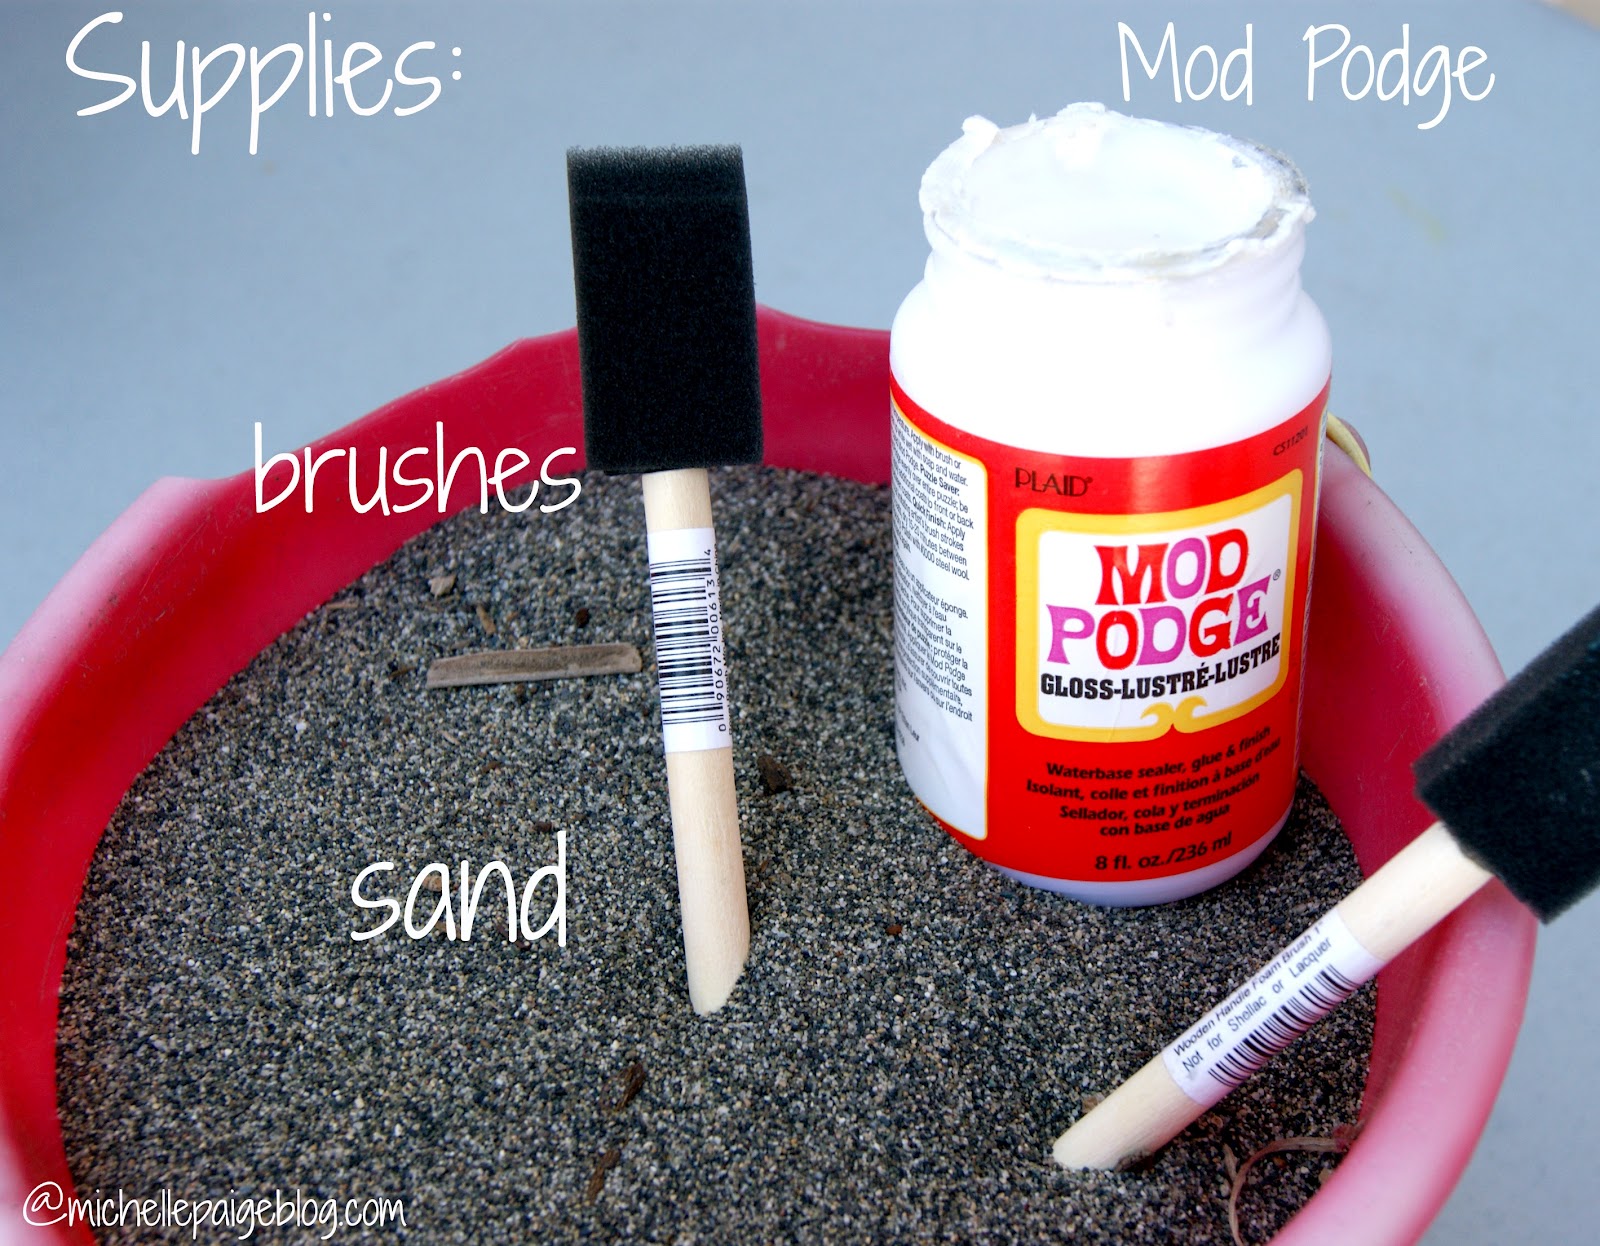 michelle paige blogs: Make a Sand Castle Centerpiece